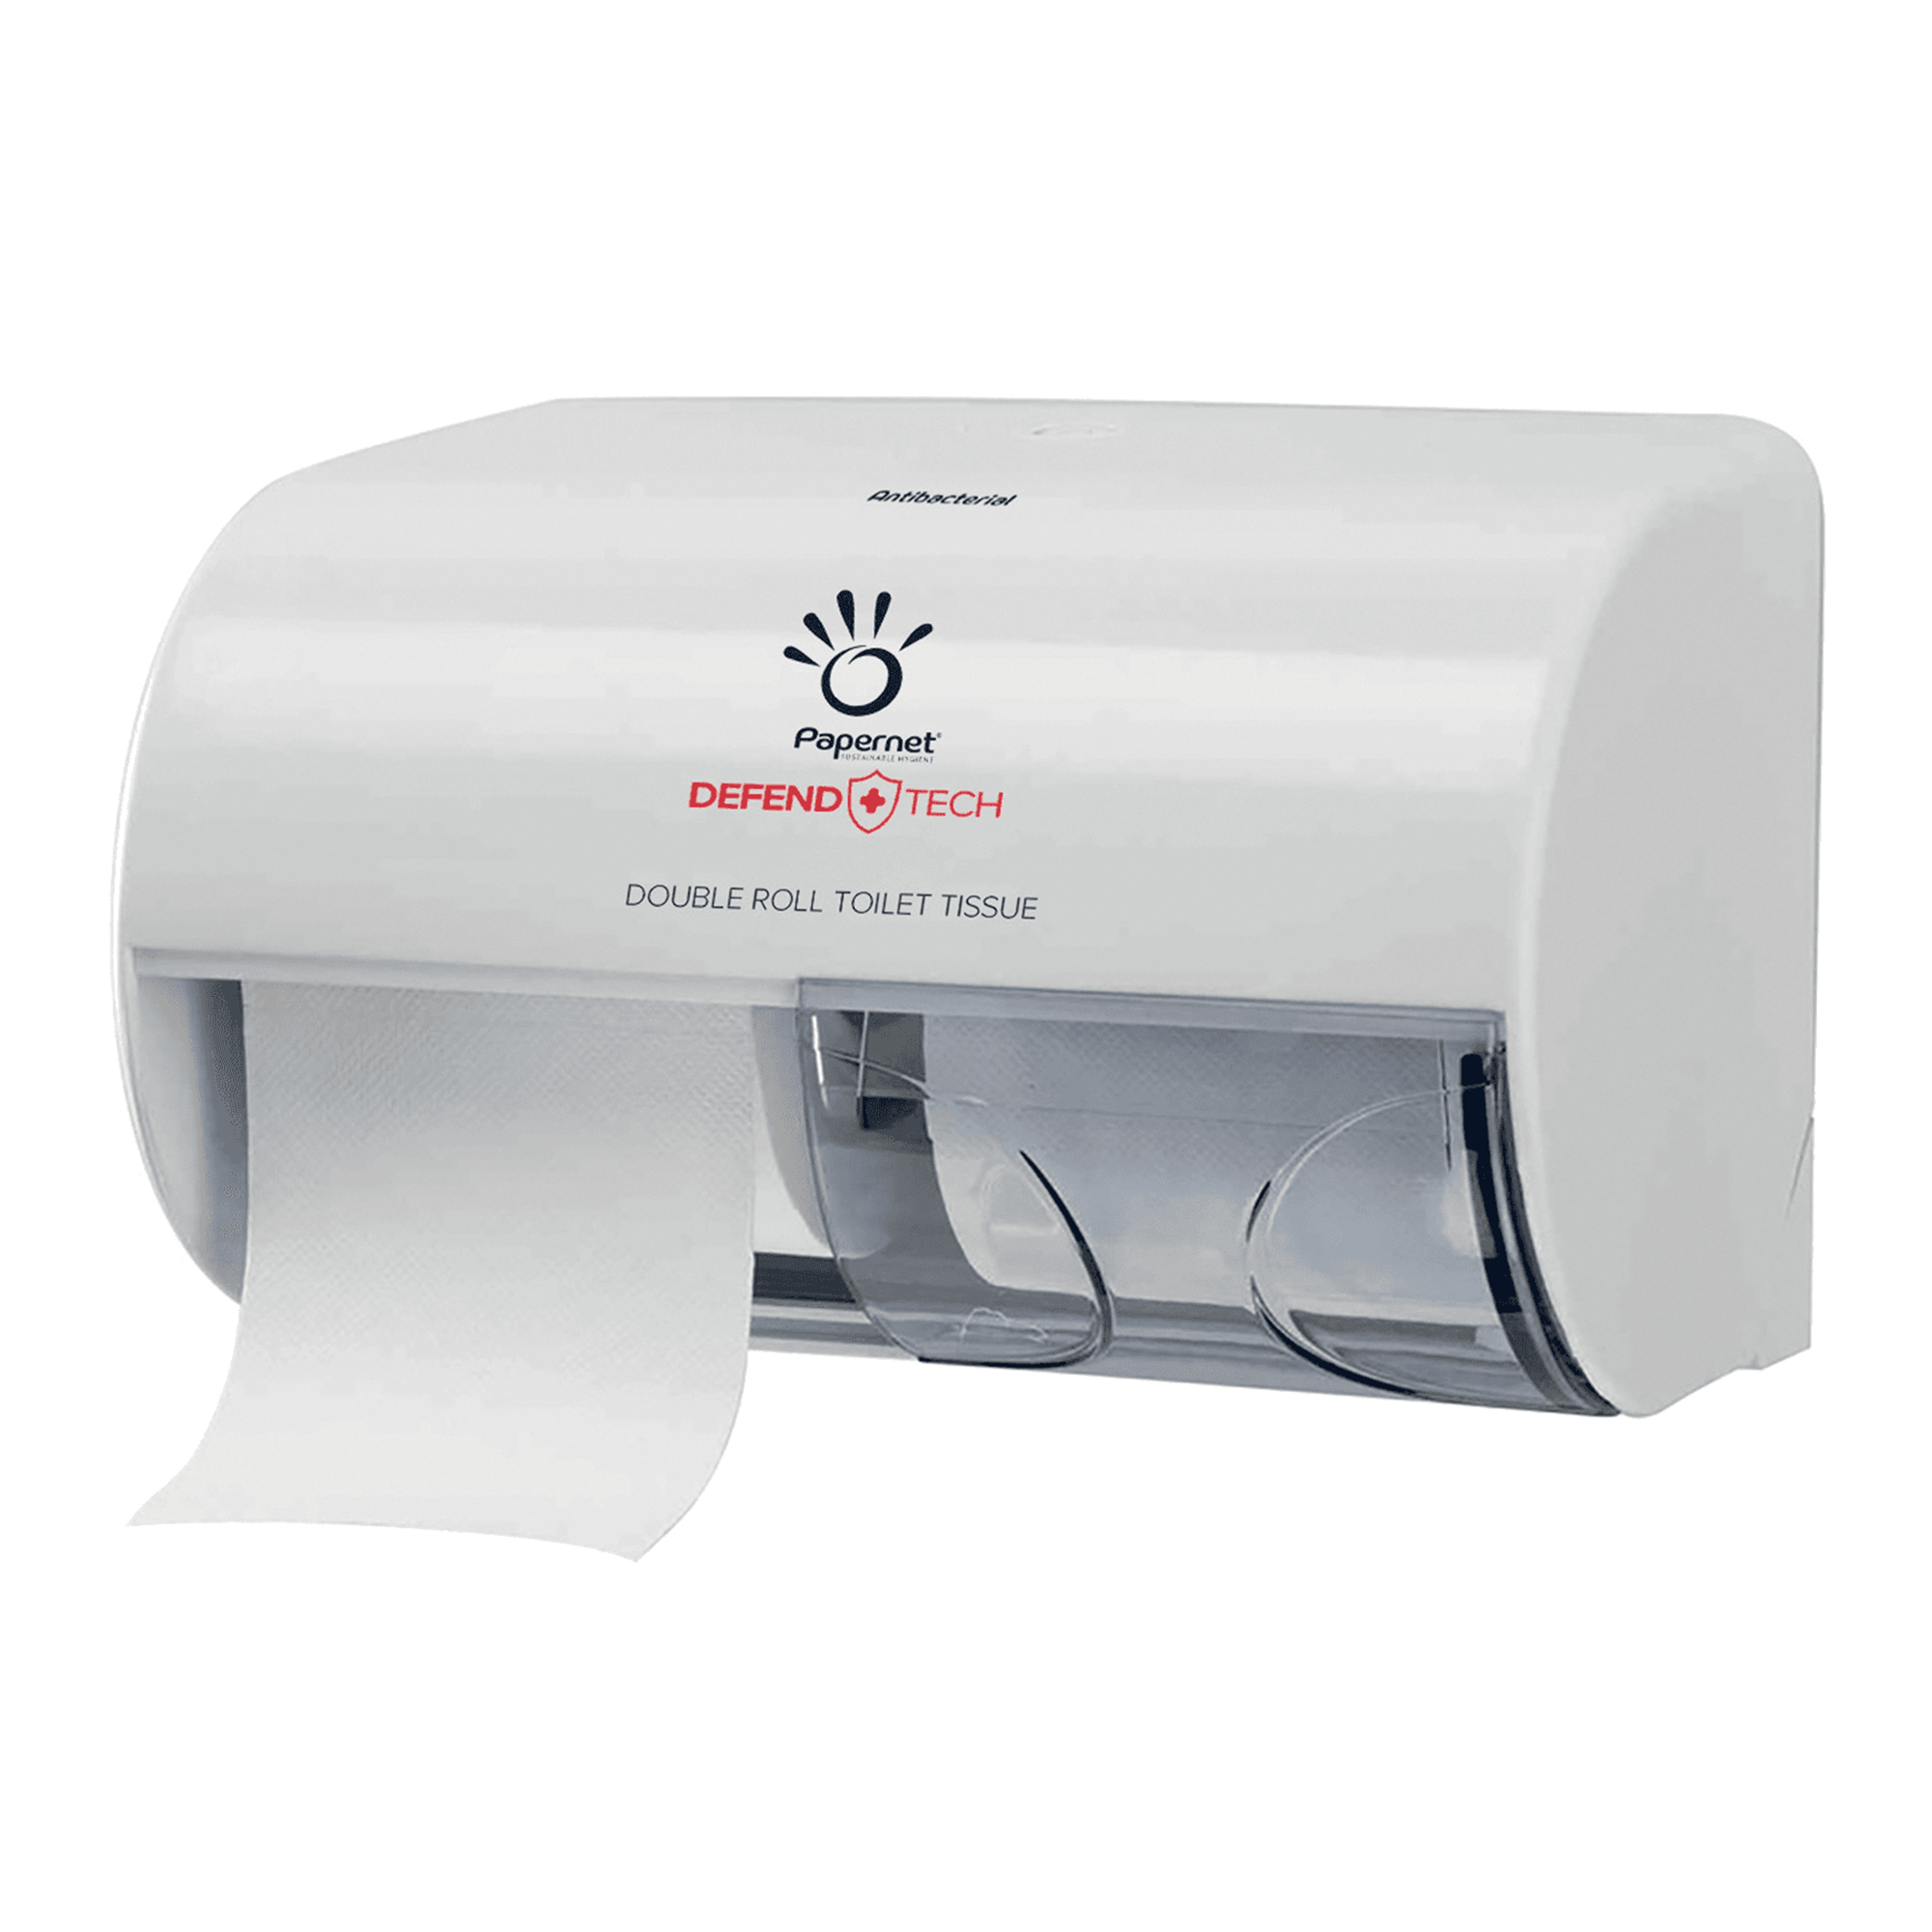 Papernet Doppelrollenspender für Toilettenpapier mit Defend Tech Technologie für 2 Kleinrollen